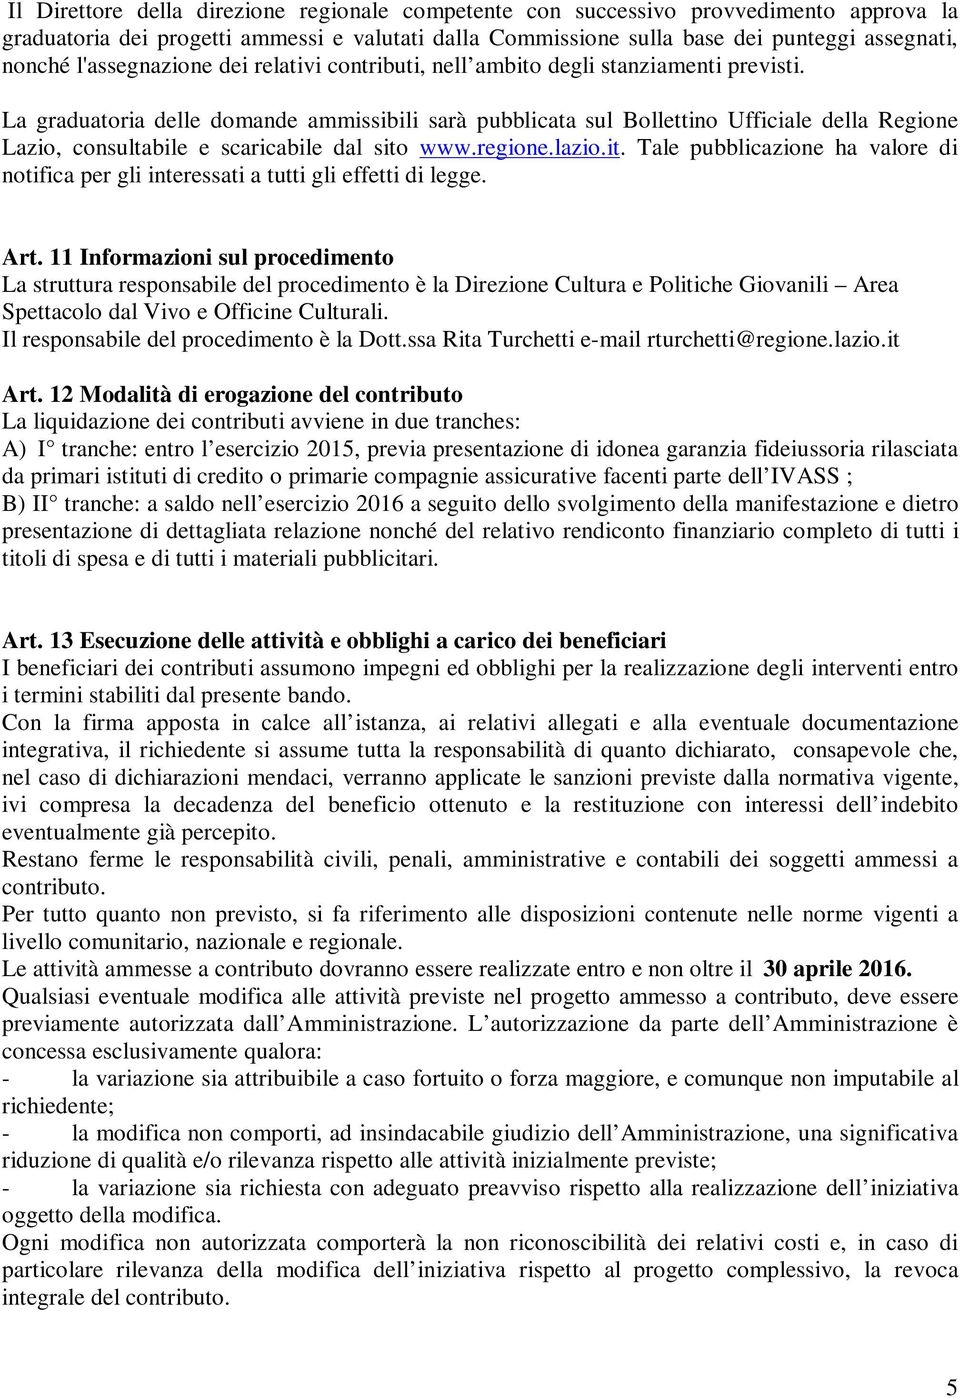 La graduatoria delle domande ammissibili sarà pubblicata sul Bollettino Ufficiale della Regione Lazio, consultabile e scaricabile dal sito